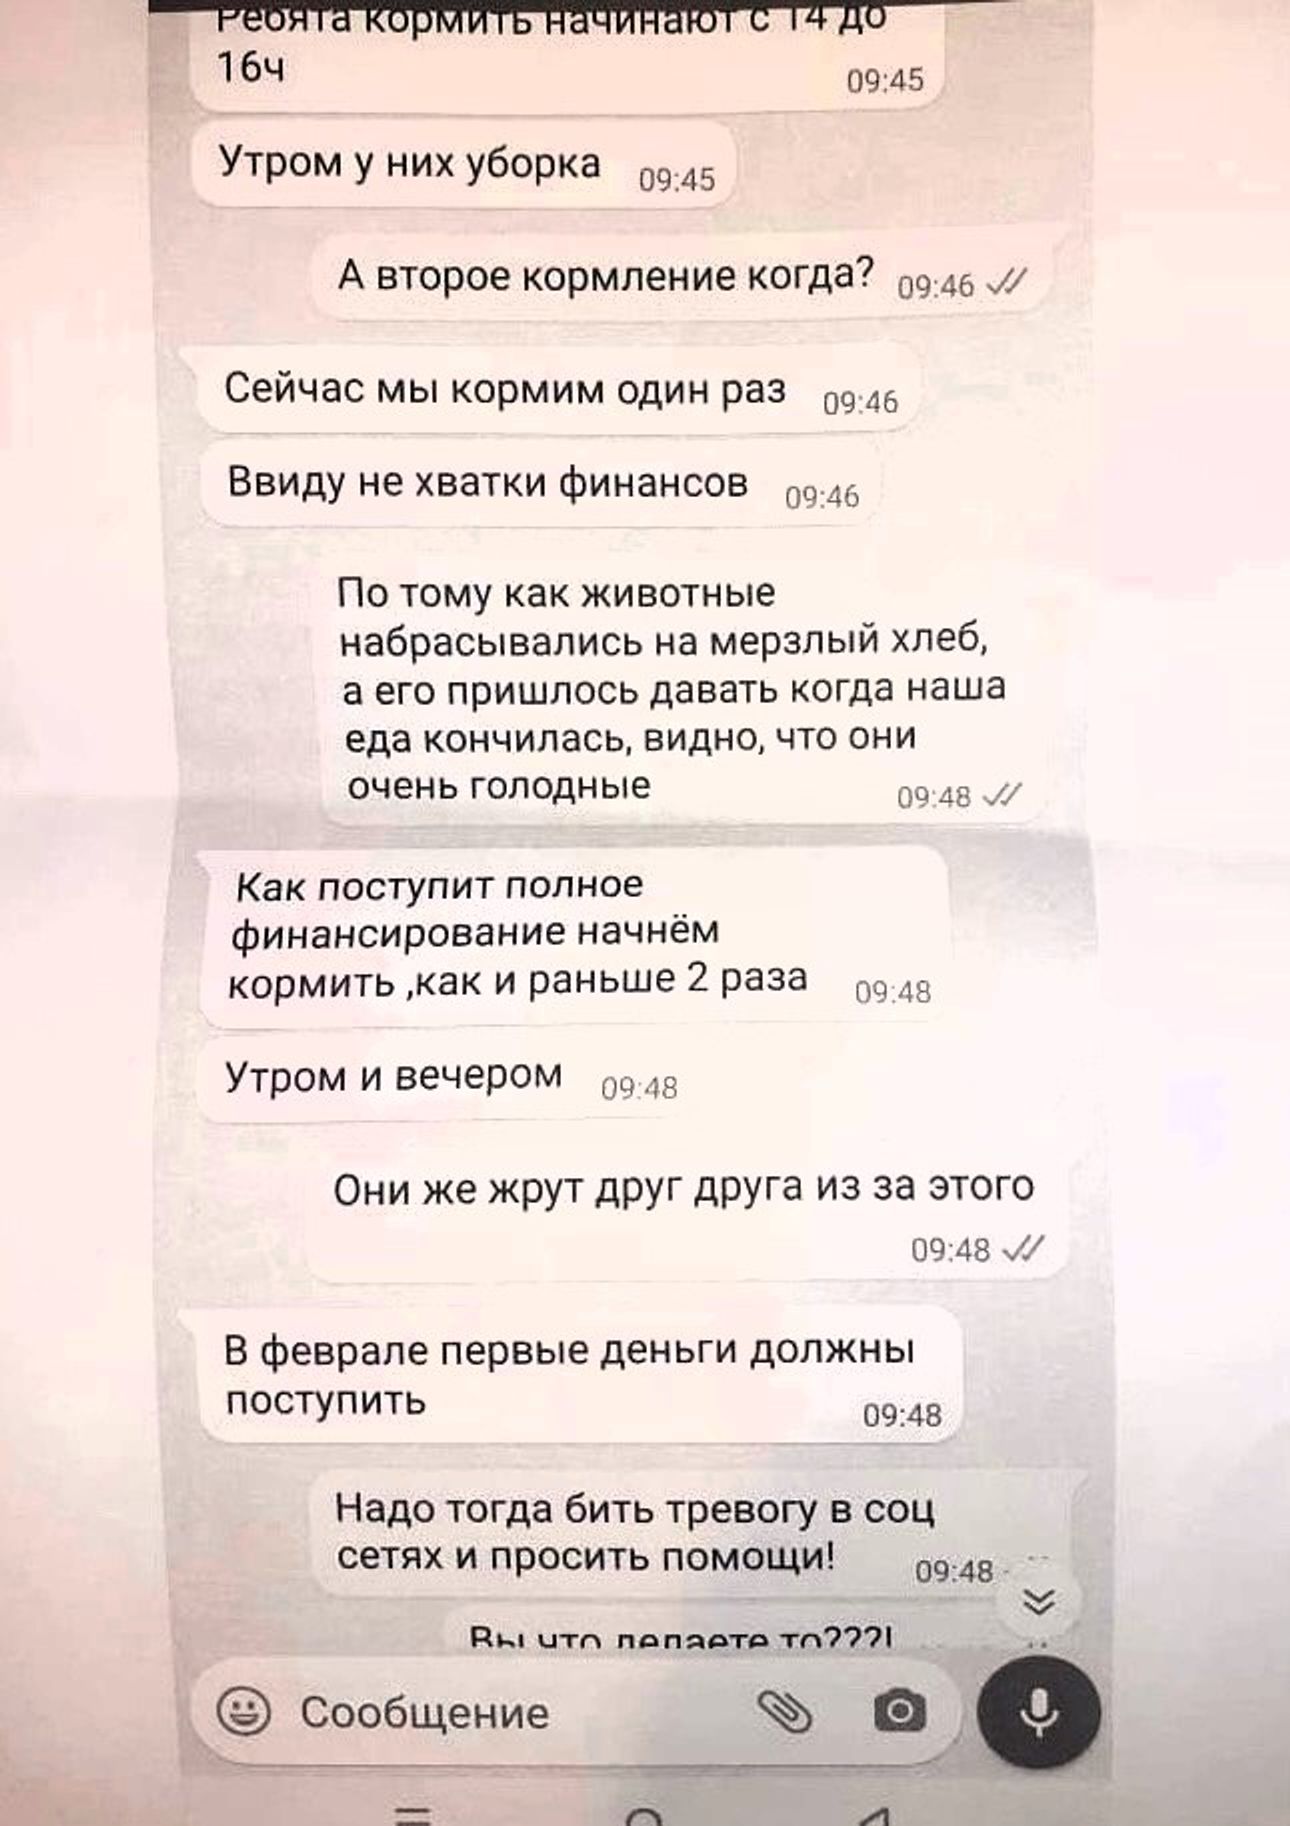  Скриншот сообщений руководителя якутского приюта Екатерины Безрученко, которая признает кормление животных раз в сутки 